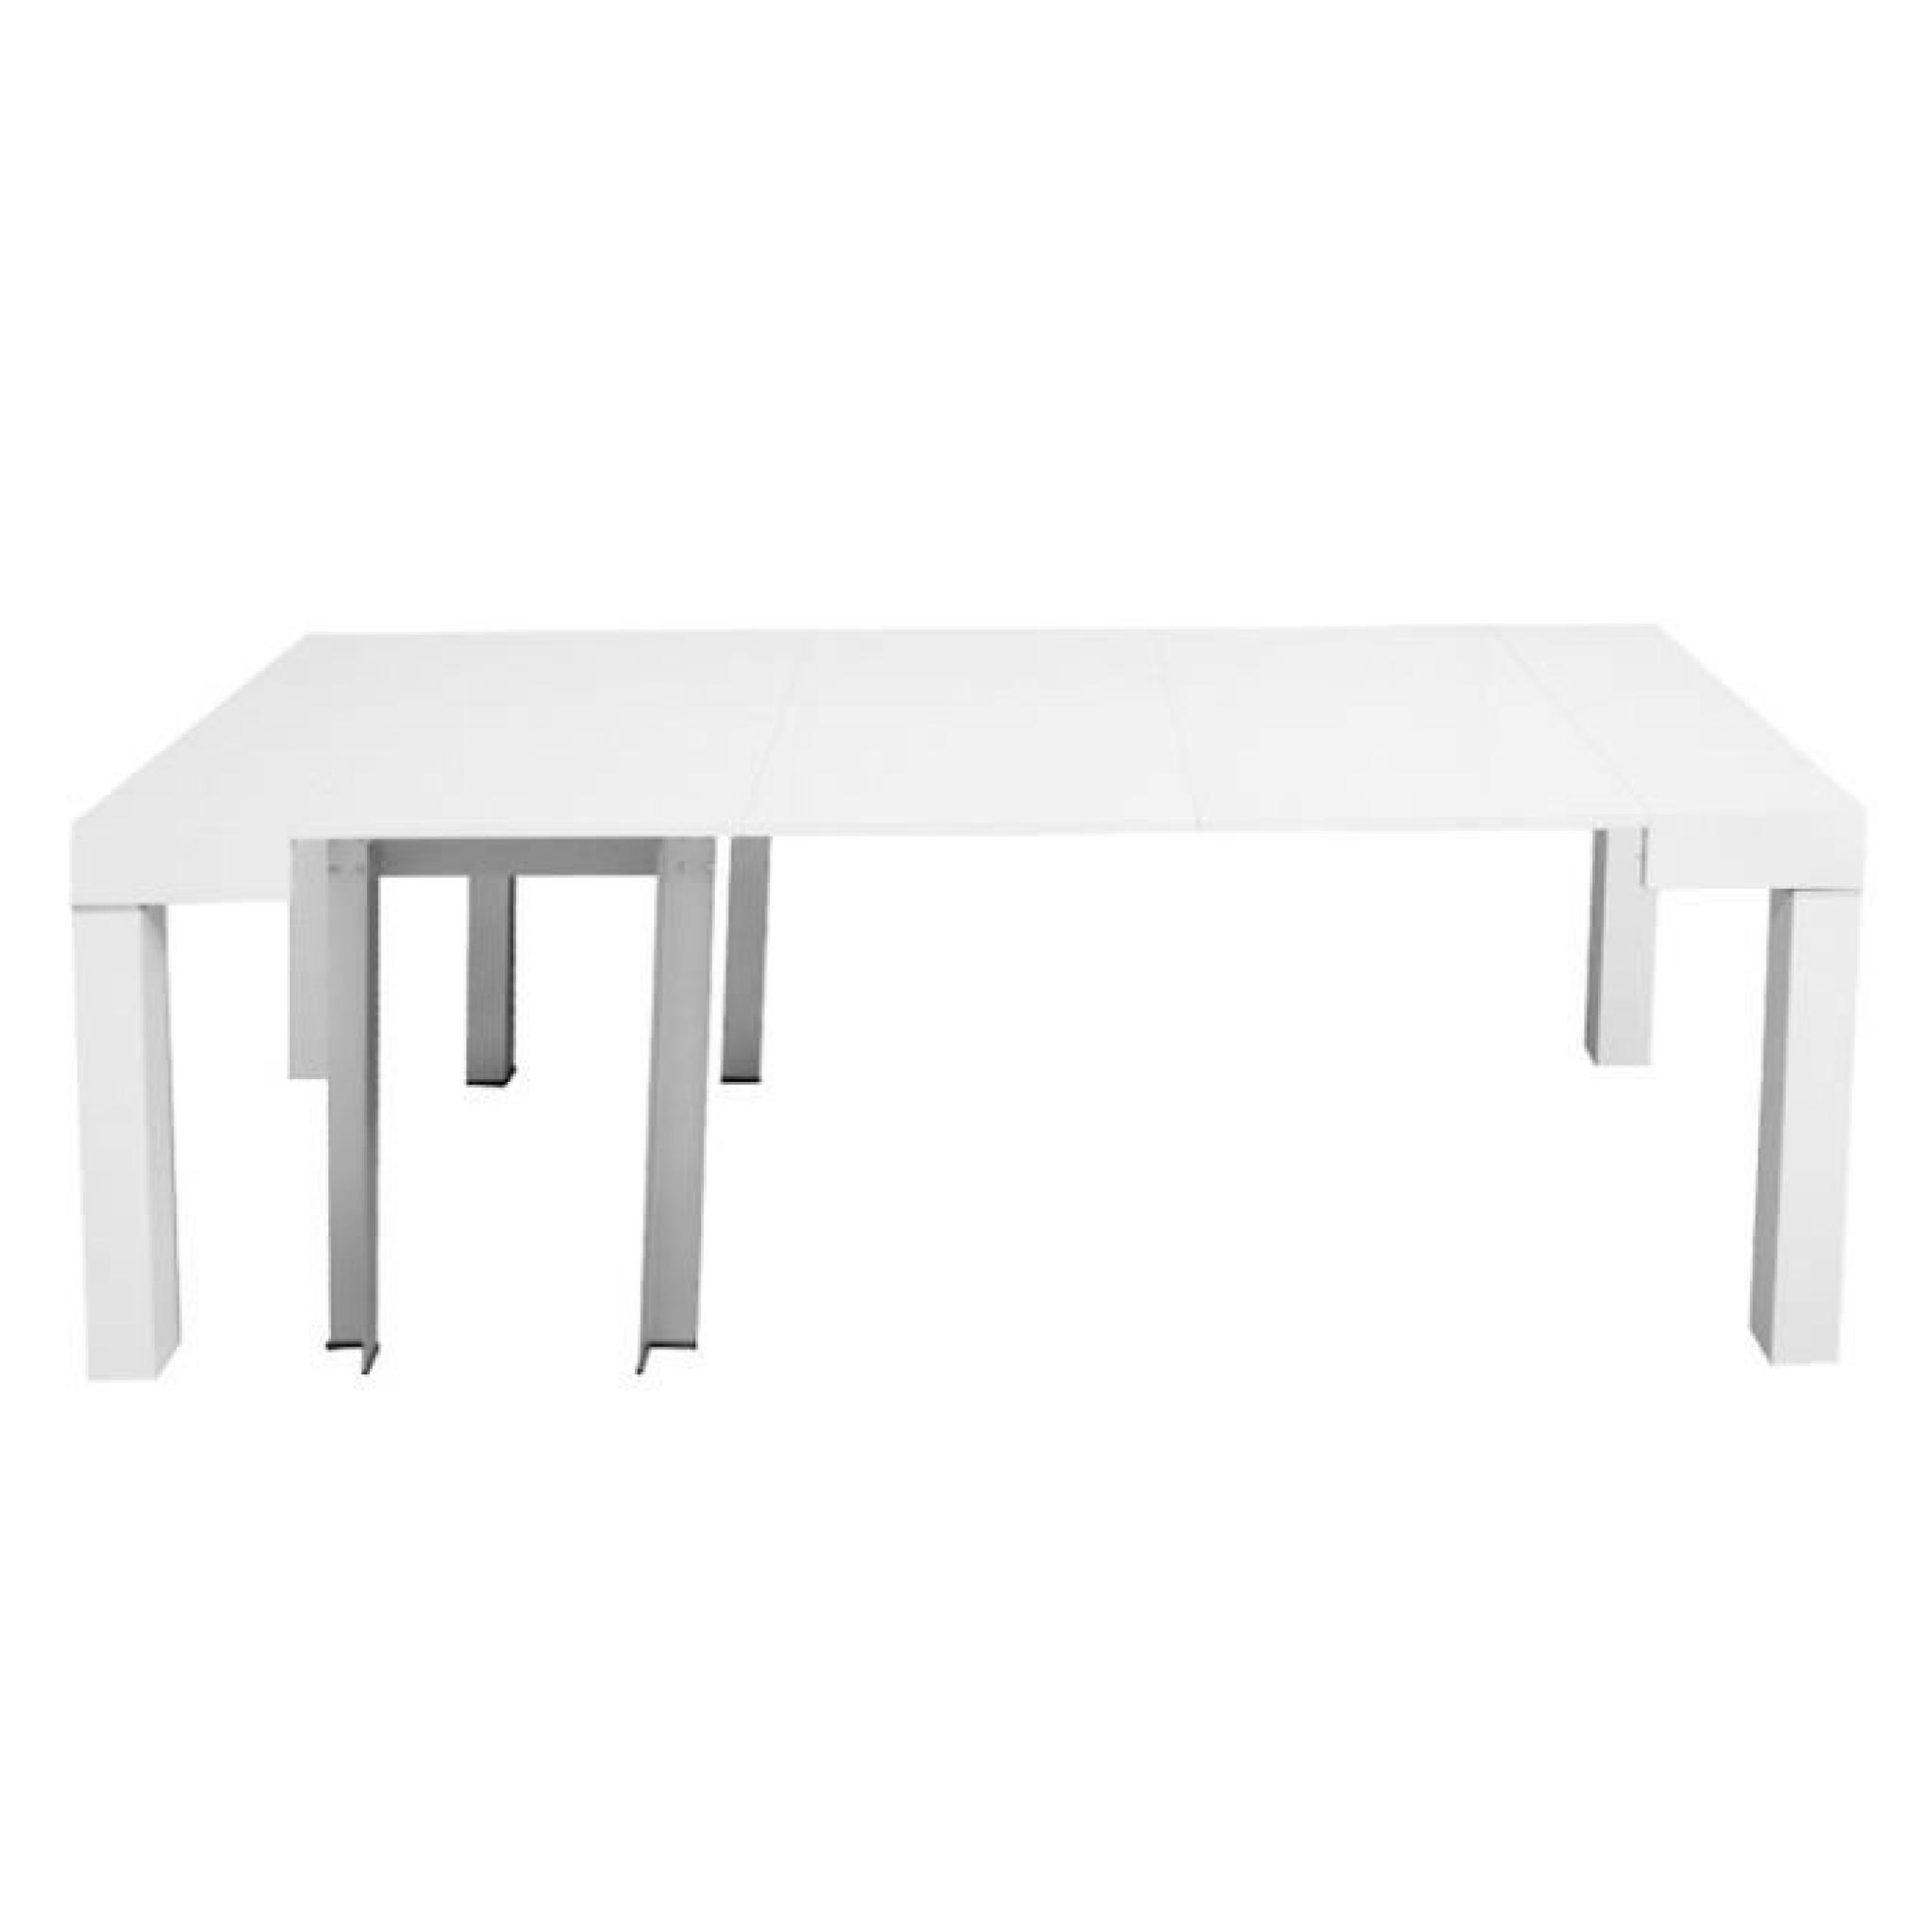 Table console laquée blanc extensible 10 personnes pas cher